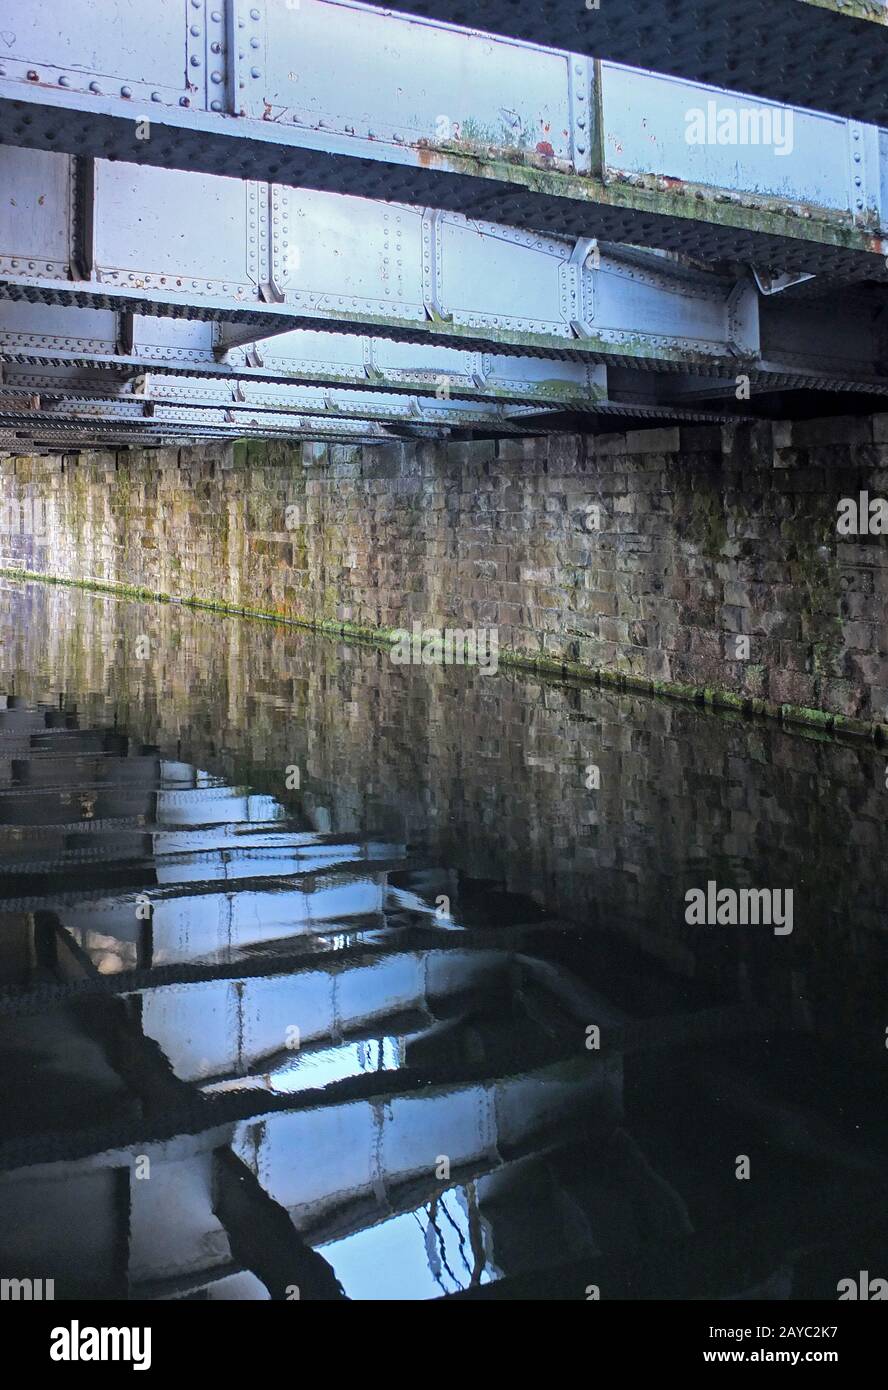 les vieilles poutres en acier se reflètent dans l'eau d'un canal sombre sous un pont Banque D'Images